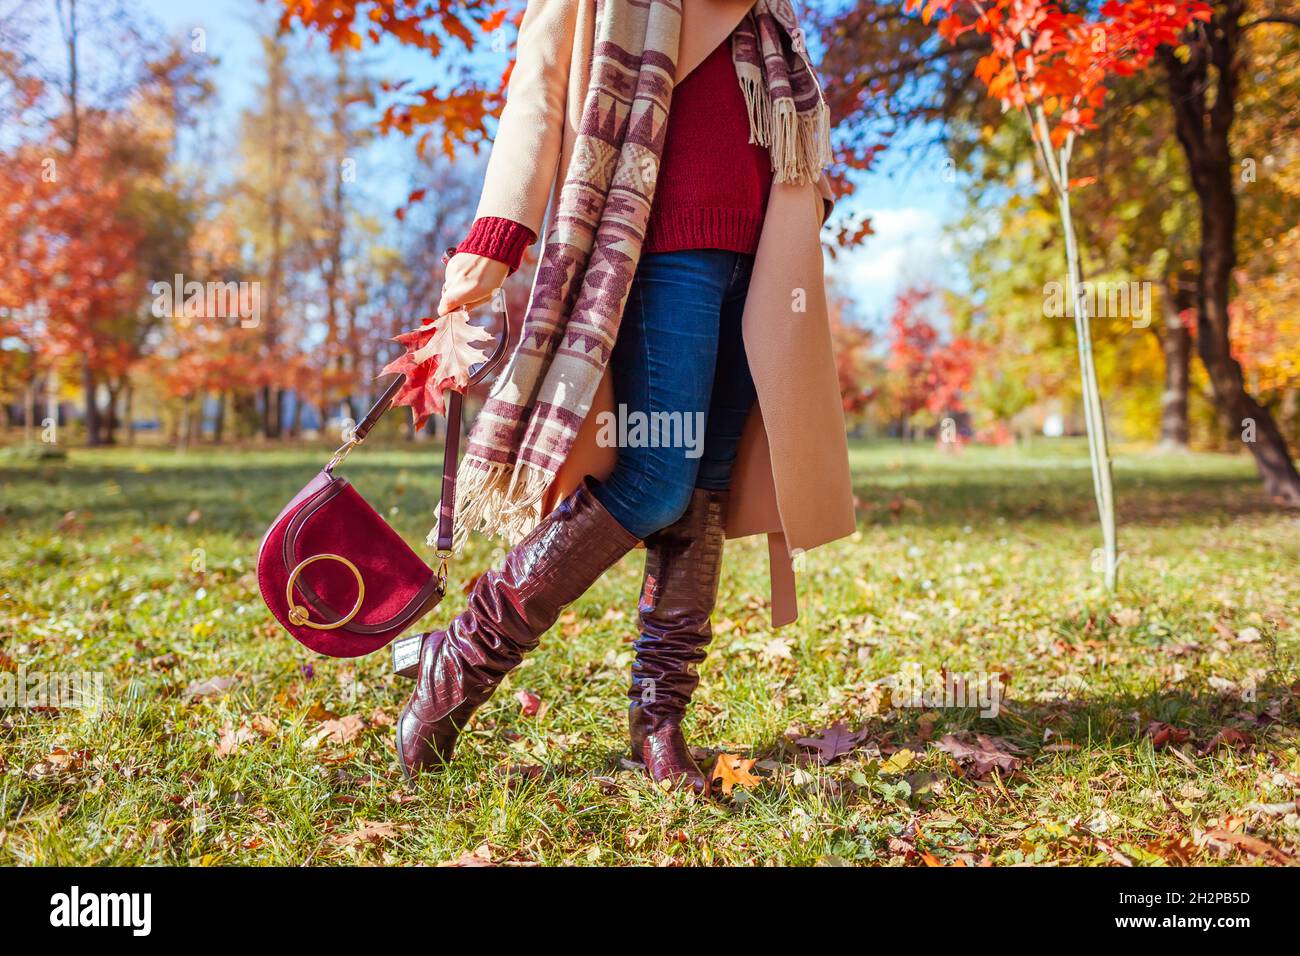 Modische Frau trägt stilvolle Kleidung Schuhe und Accessoires zu Fuß im  Herbst Park. Herbst-Outfit für Damen. Trendige kniehohe Stiefel, Mantel und  Burgunder Stockfotografie - Alamy